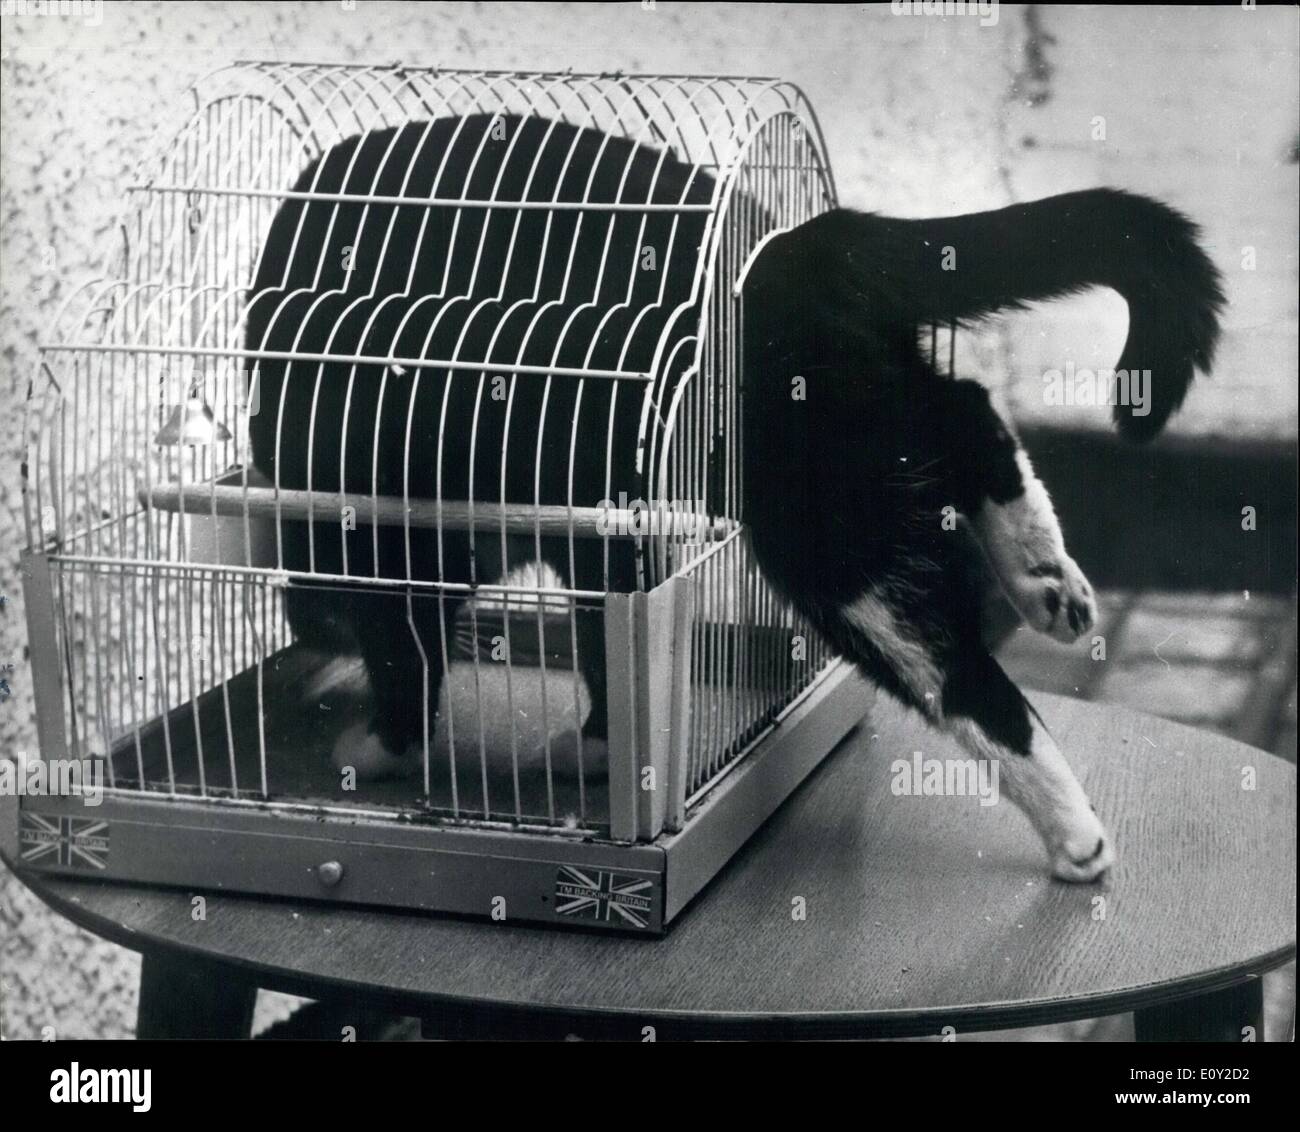 6. Juni 1968 - '' Tootsy'' zahlt eine soziale rufen auf '' Pip'': '' Tootsy'', Katze, oft zu sehen in den Käfig der '' Pip'', Wellensittich, nicht auf der Suche nach Beute, aber Jet einen freundlichen Anruf auf ein anderes Mitglied des Haushalts zu bezahlen. Die Katze schläft manchmal in den Käfig, besetzen die Bodenfläche mit dem Vogel sitzt auf dem Rücken. Der Wellensittich zeigt auf der Angst vor der Katze, gekauft in der Tat manchmal Freiheiten mit ihr zu sprechen, Runde reiten auf den Katzenkopf Stockfoto